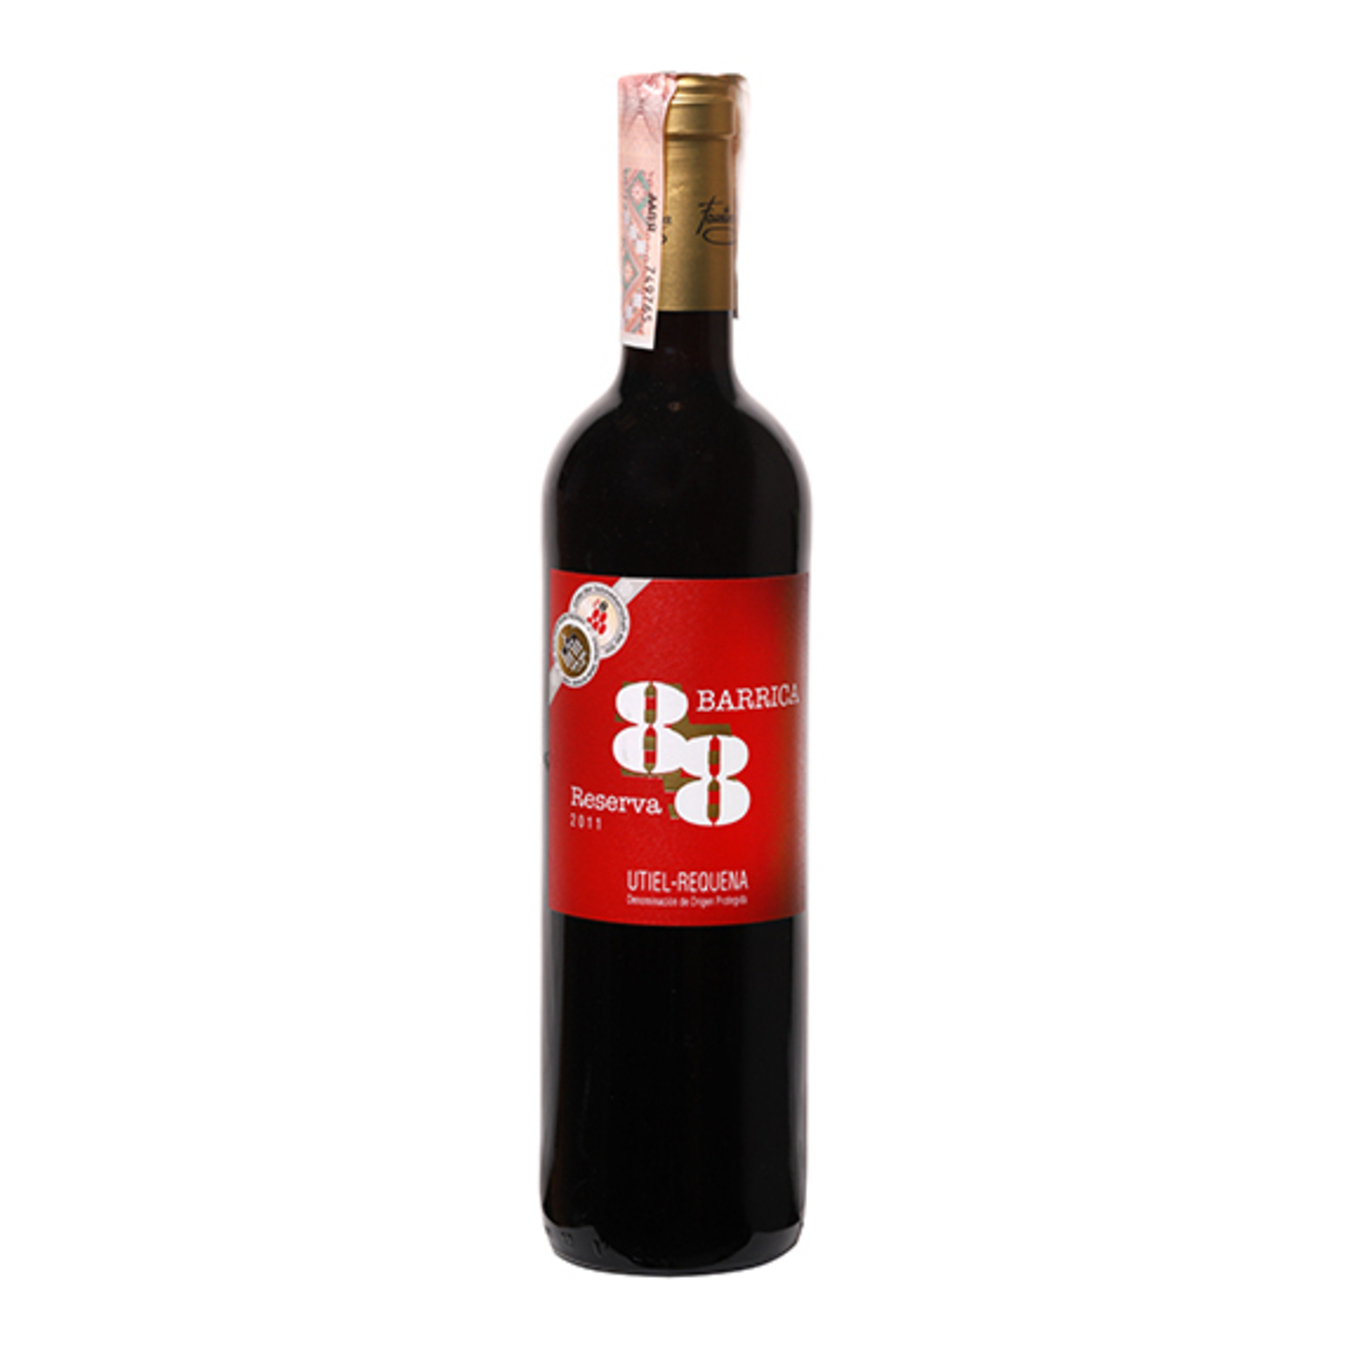 Вино Barrica 88 Reserva Utiel-Requena красное сухое 13% 0,75л